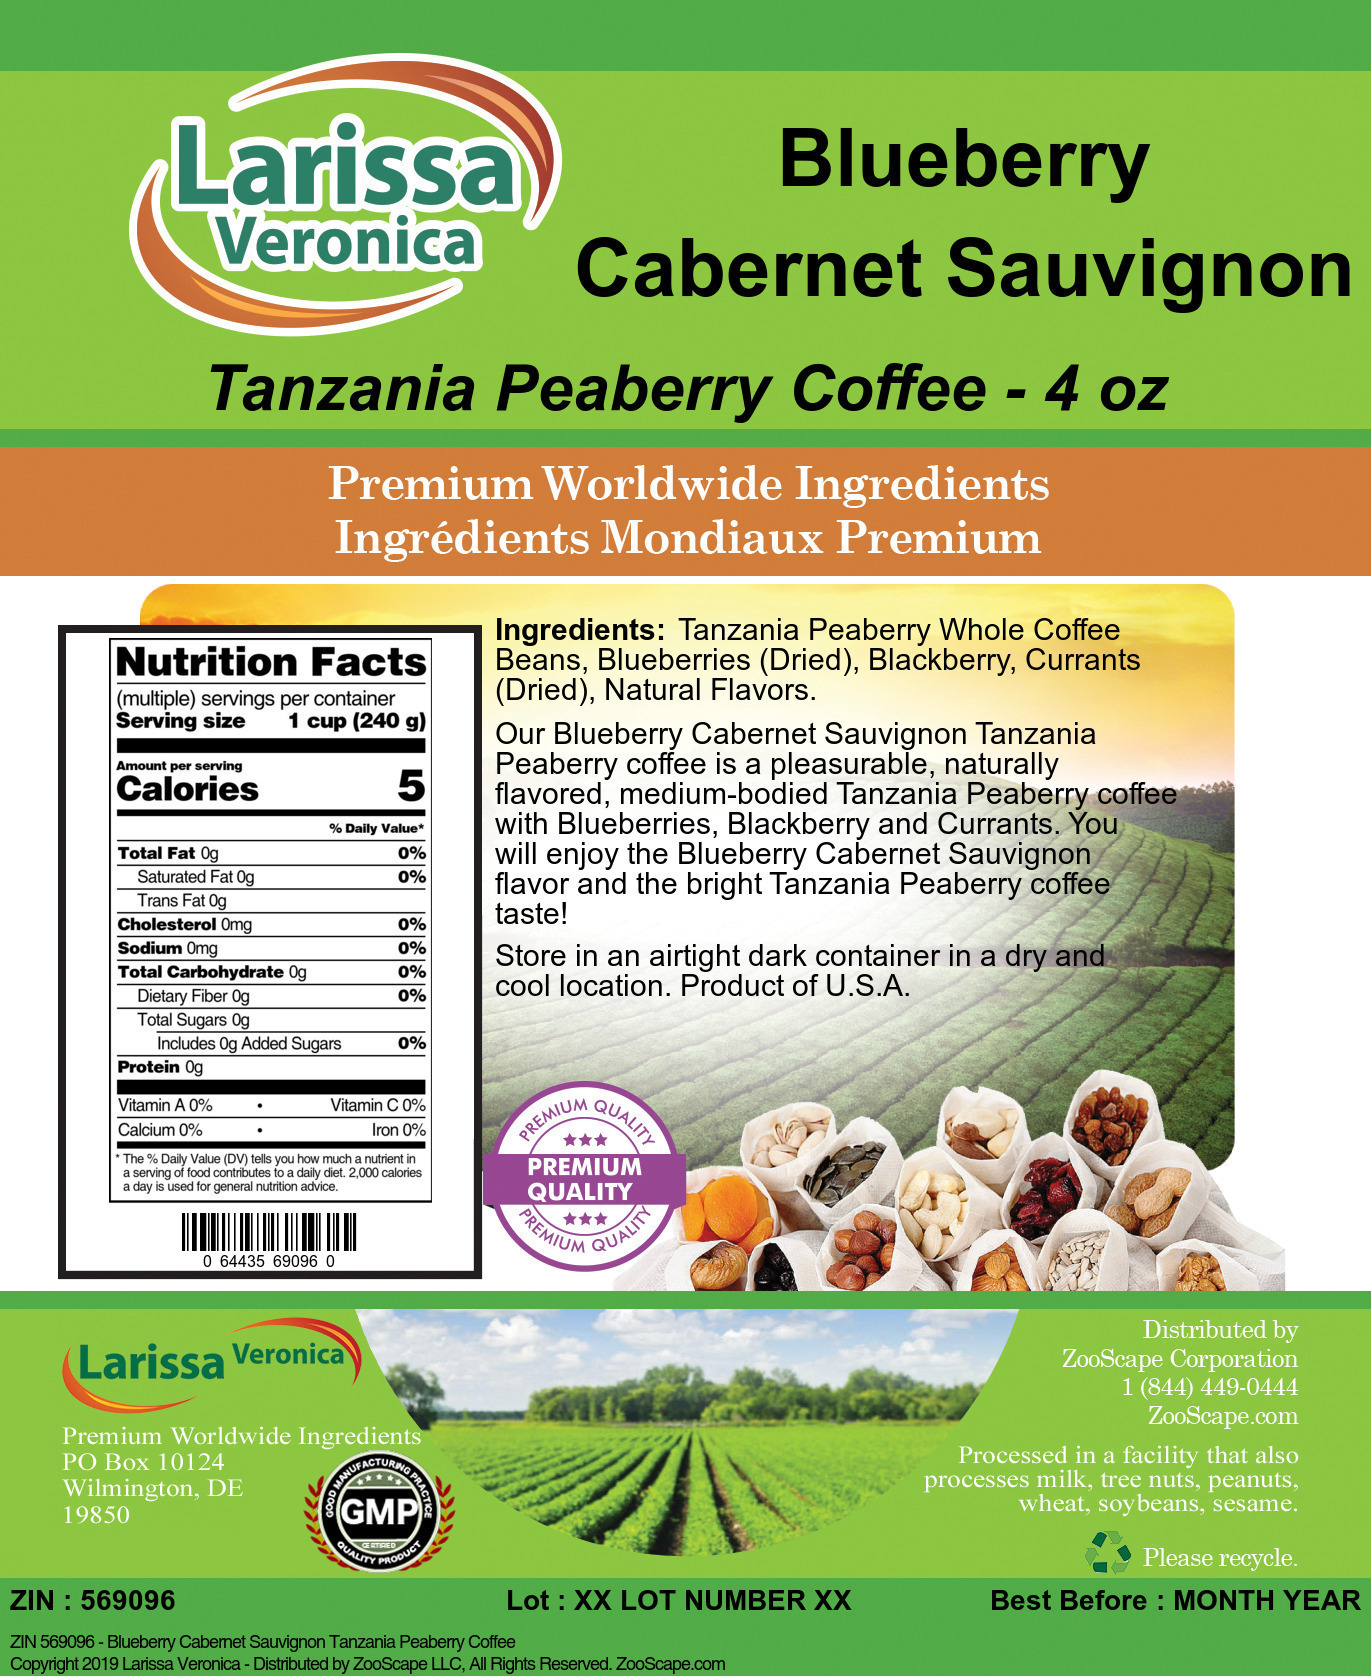 Blueberry Cabernet Sauvignon Tanzania Peaberry Coffee - Label